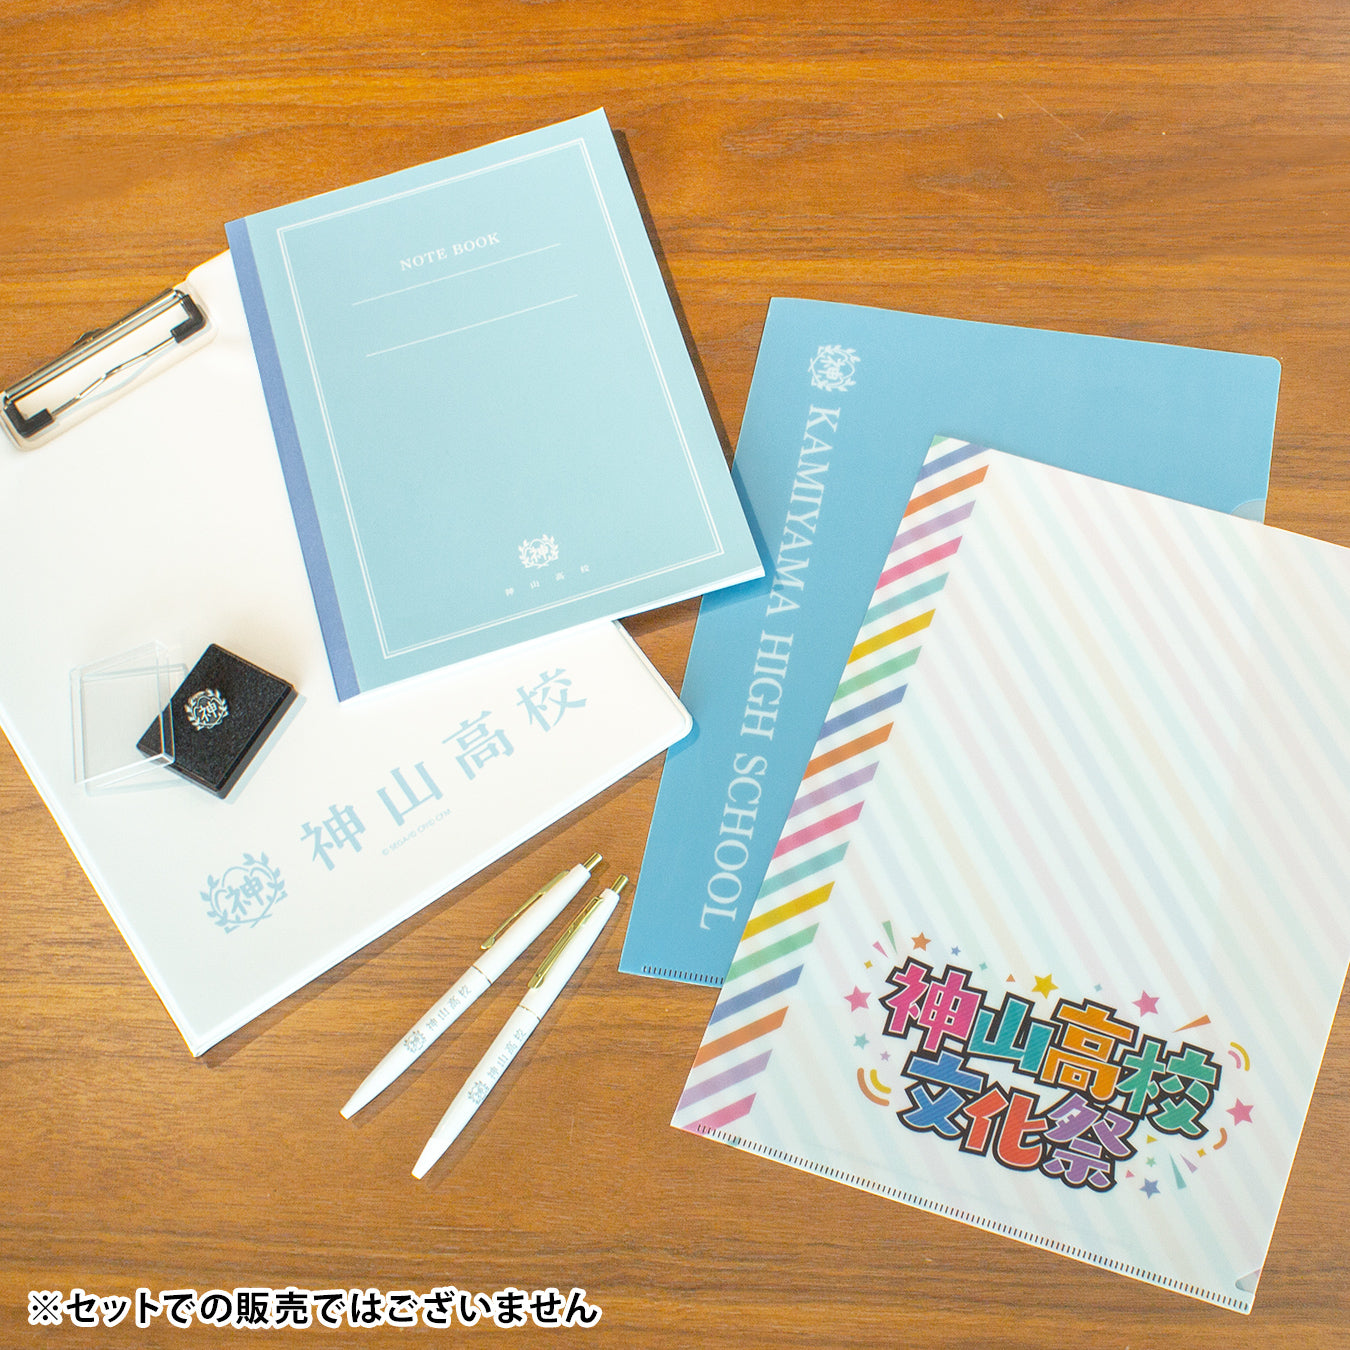 【予約商品】神山高校文化祭 クリアファイルセット